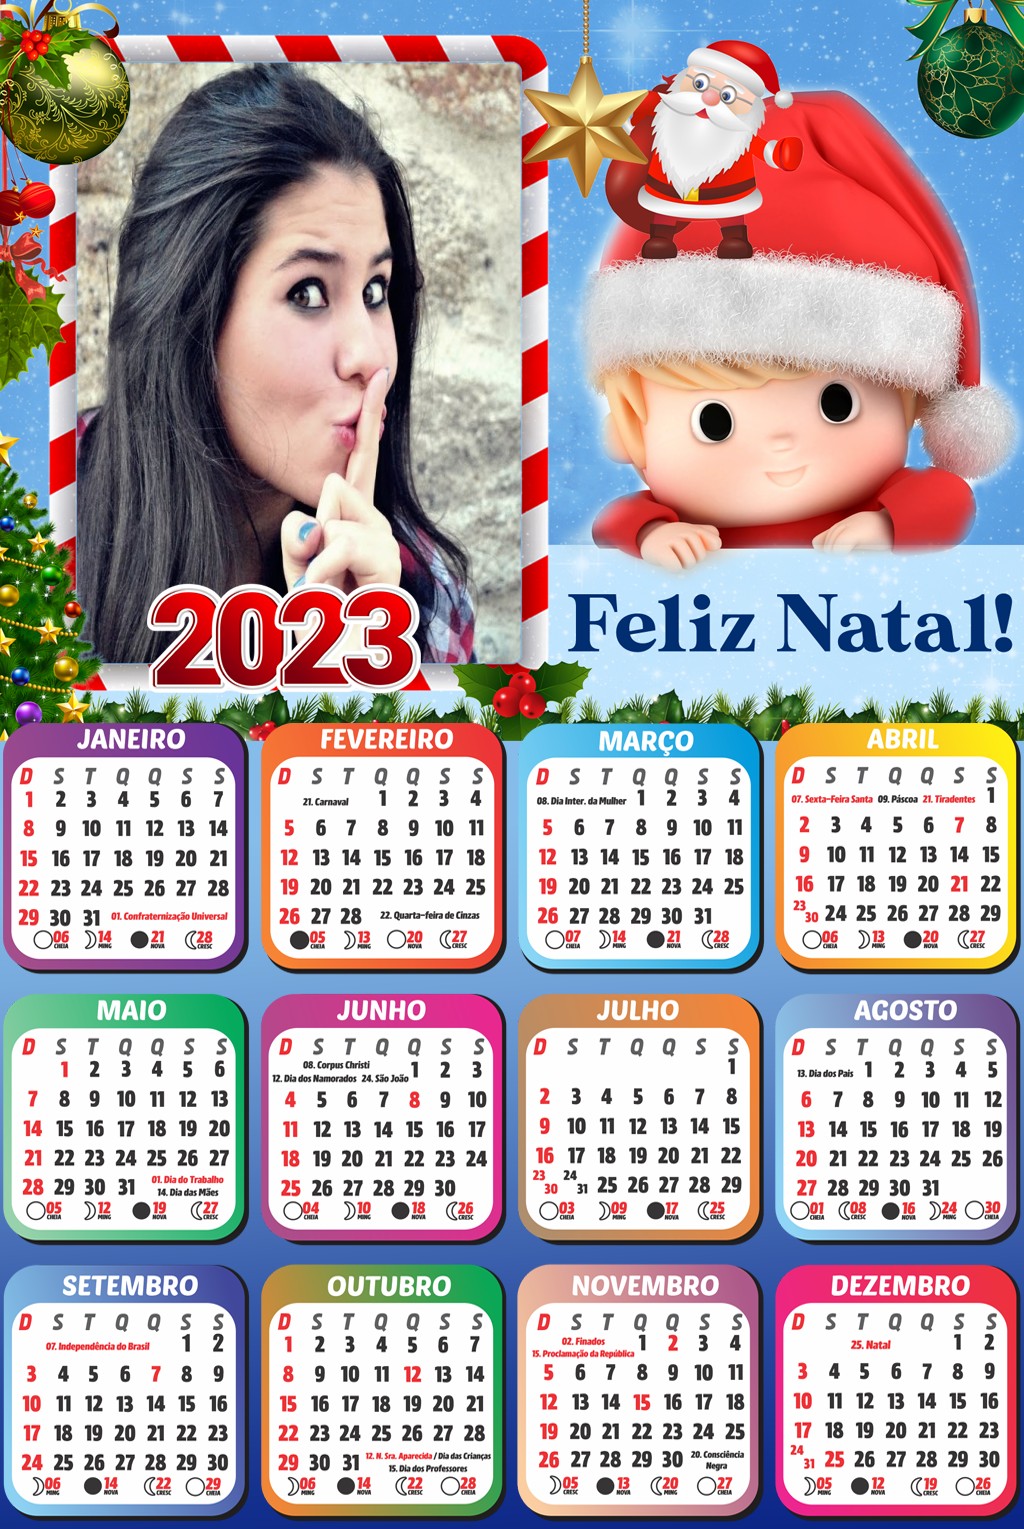 2023-feliz-natal-foto-moldura